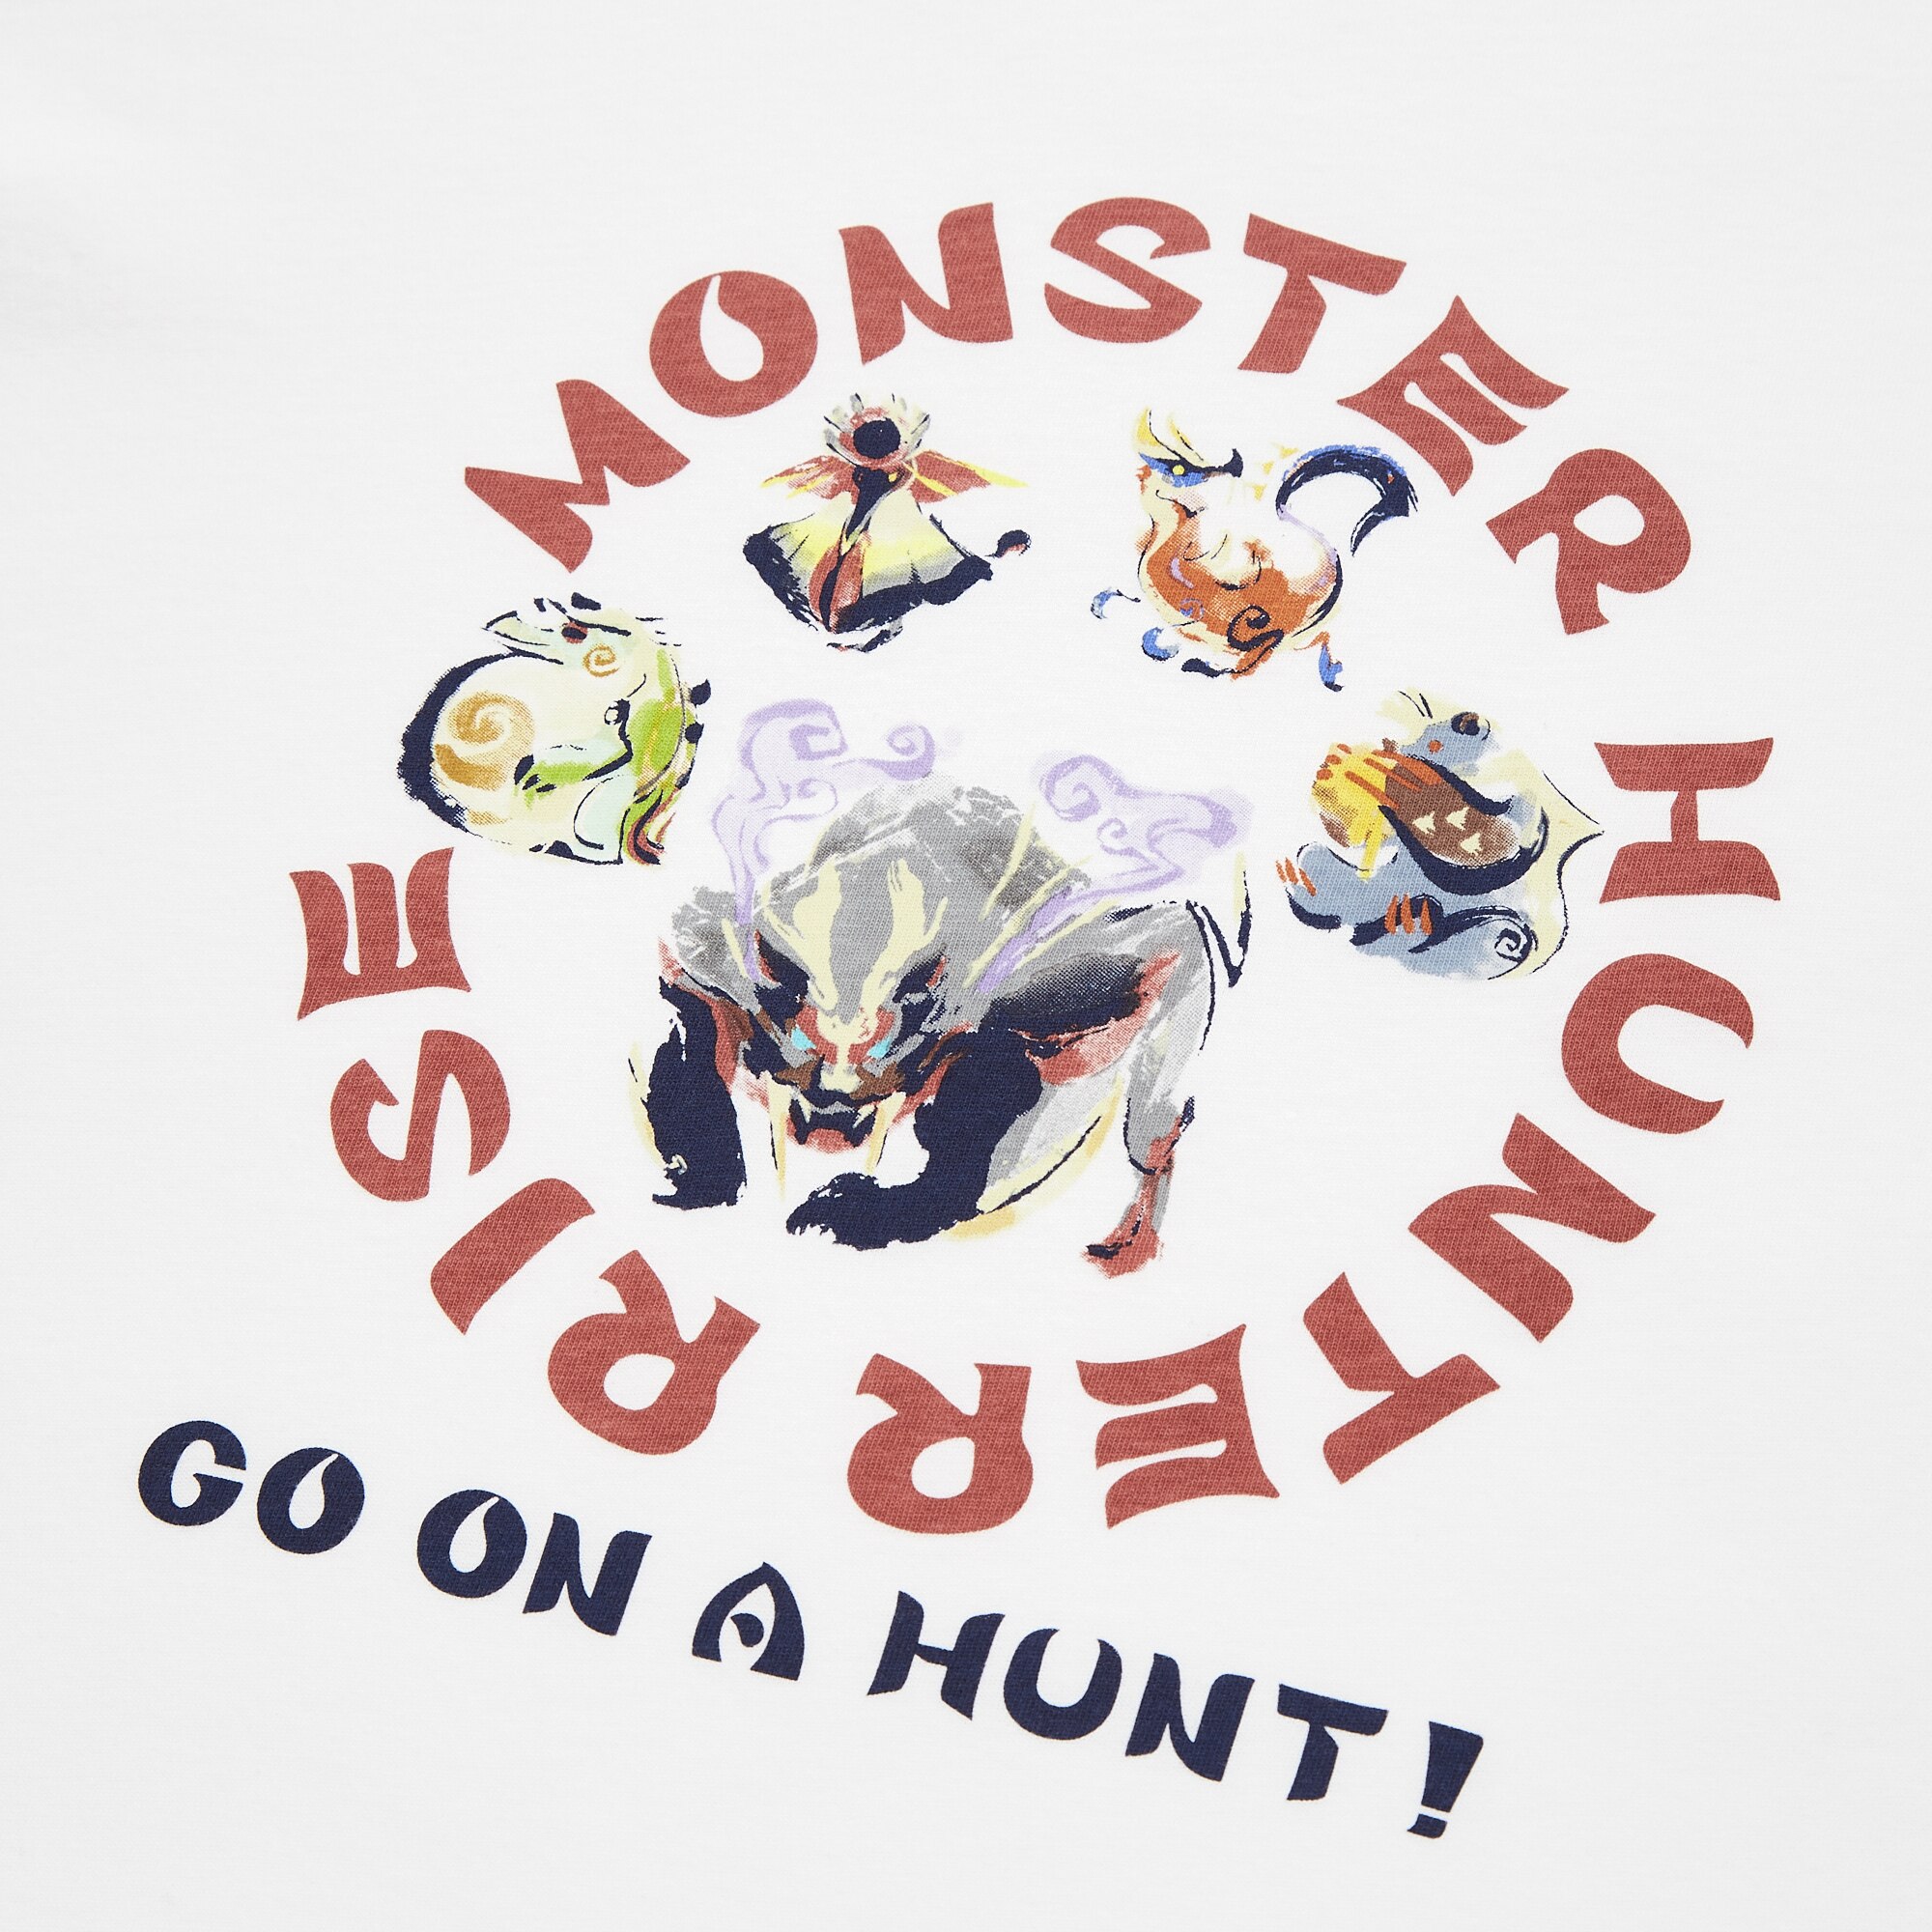 monster hunter rise price